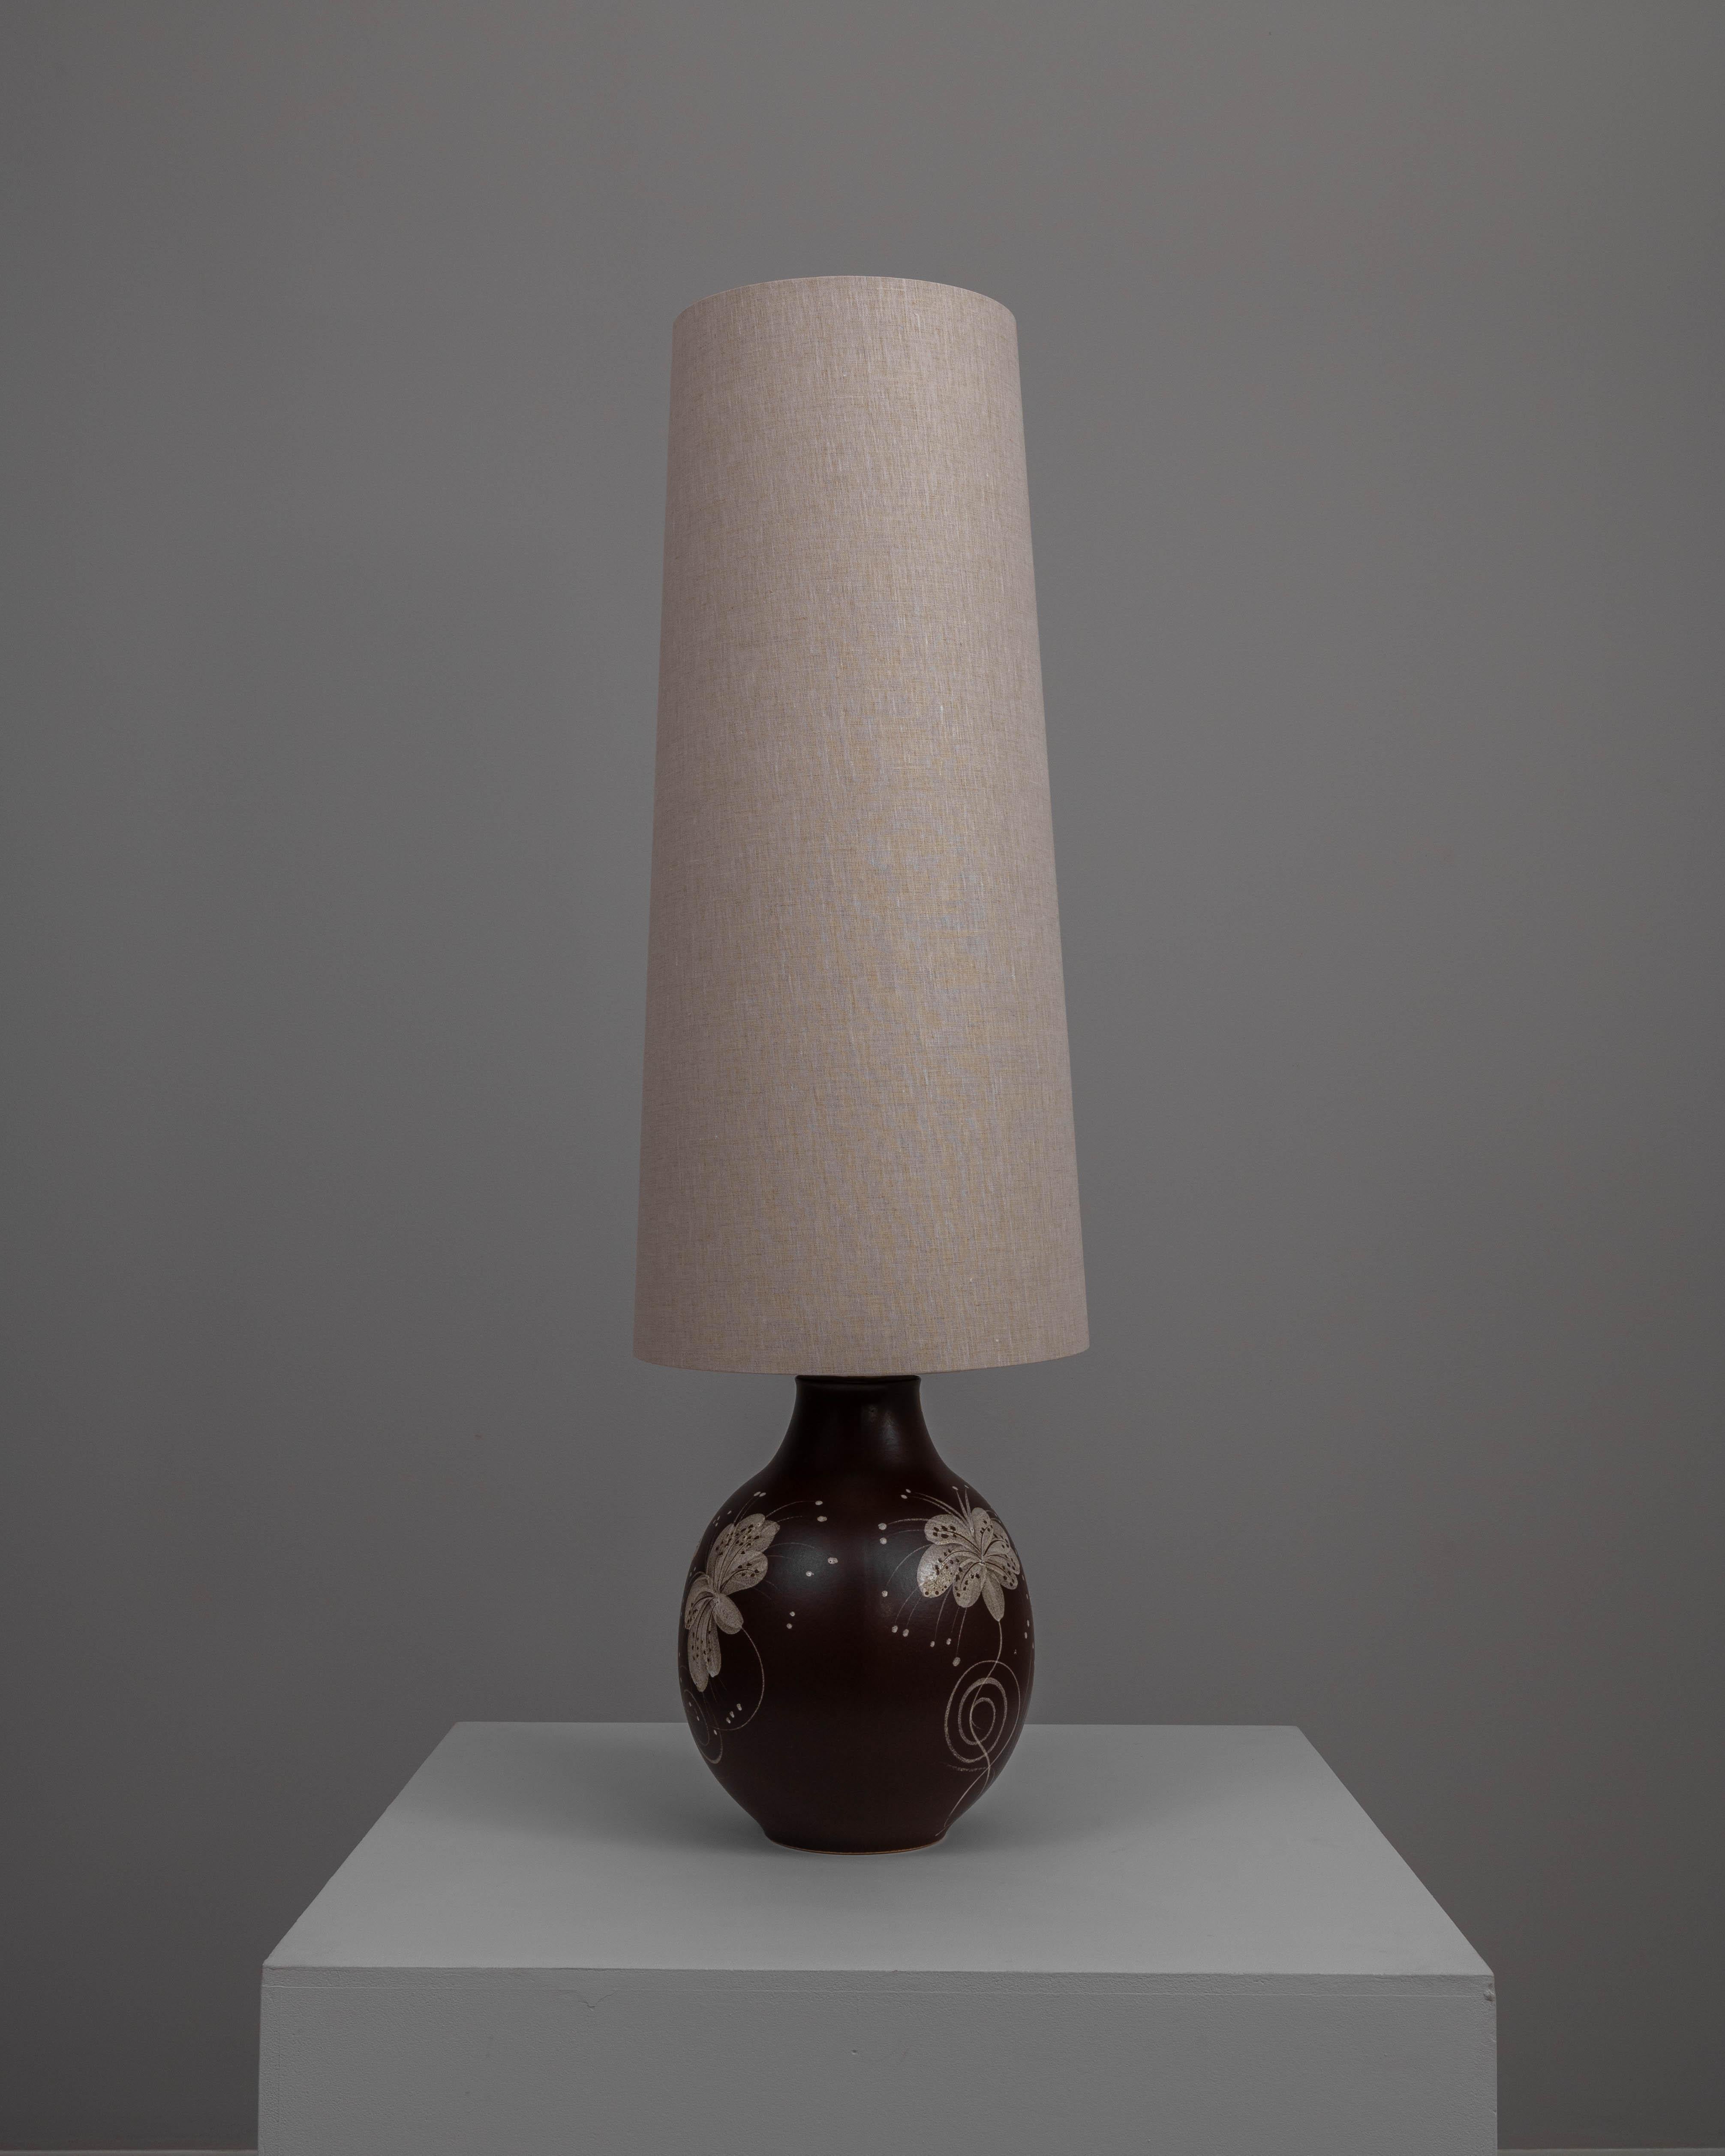 Questa lampada da tavolo in ceramica tedesca del XX secolo è uno squisito esempio di arte funzionale. La base in ceramica, ricca di una profonda tonalità marrone, è ornata da delicati motivi floreali bianchi che aggiungono un tocco di eleganza e